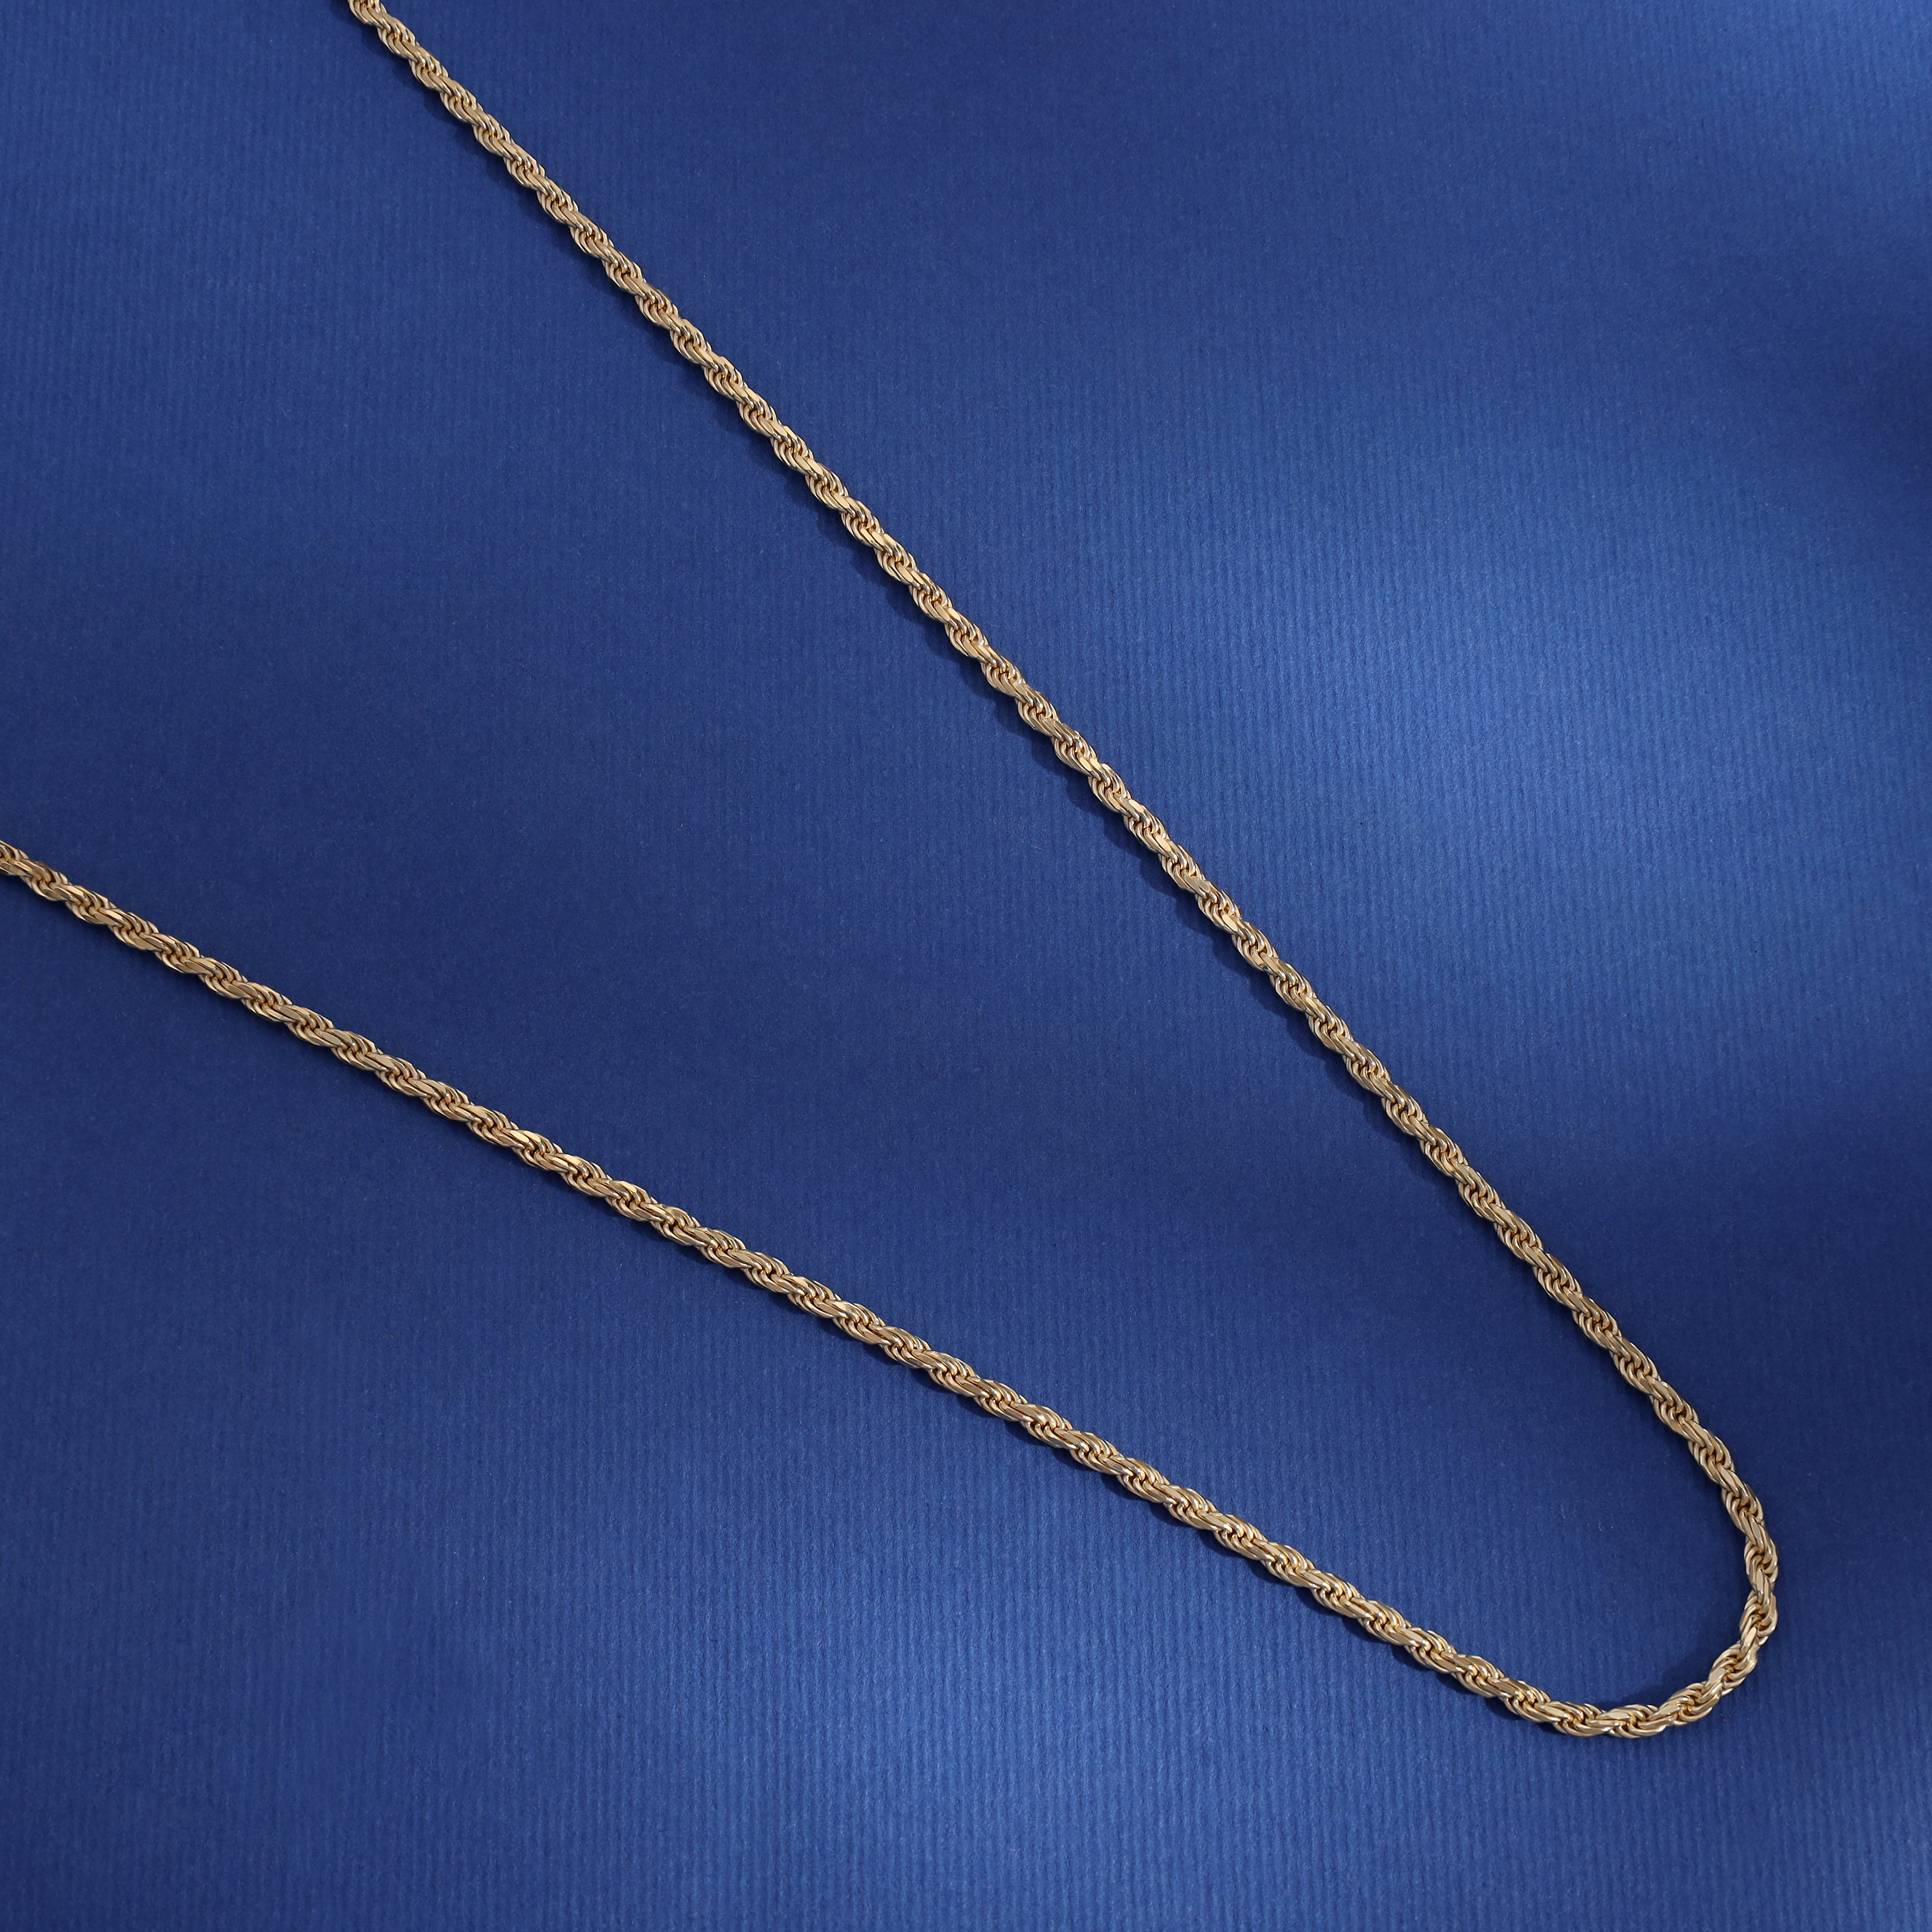 Vergoldete Kordelkette Rope Chain 2,3mm 55cm lang 925 Sterling Silber (K807) - Taipan Schmuck